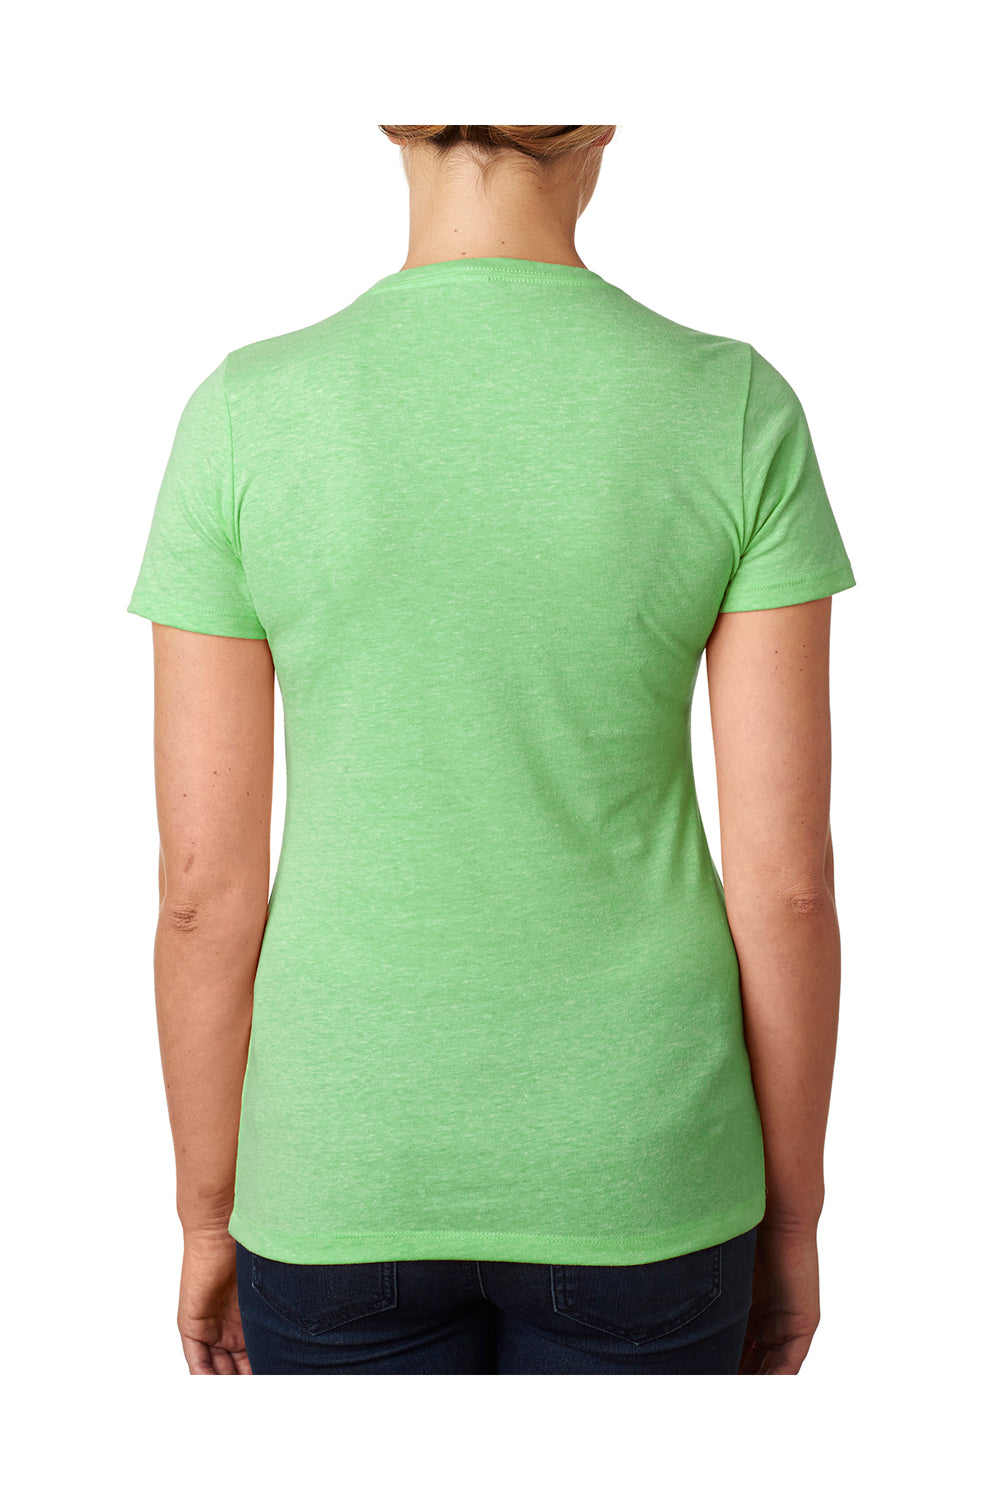 Next Level 6610 Womens CVC Jersey Short Sleeve Crewneck T-Shirt Apple Green Back